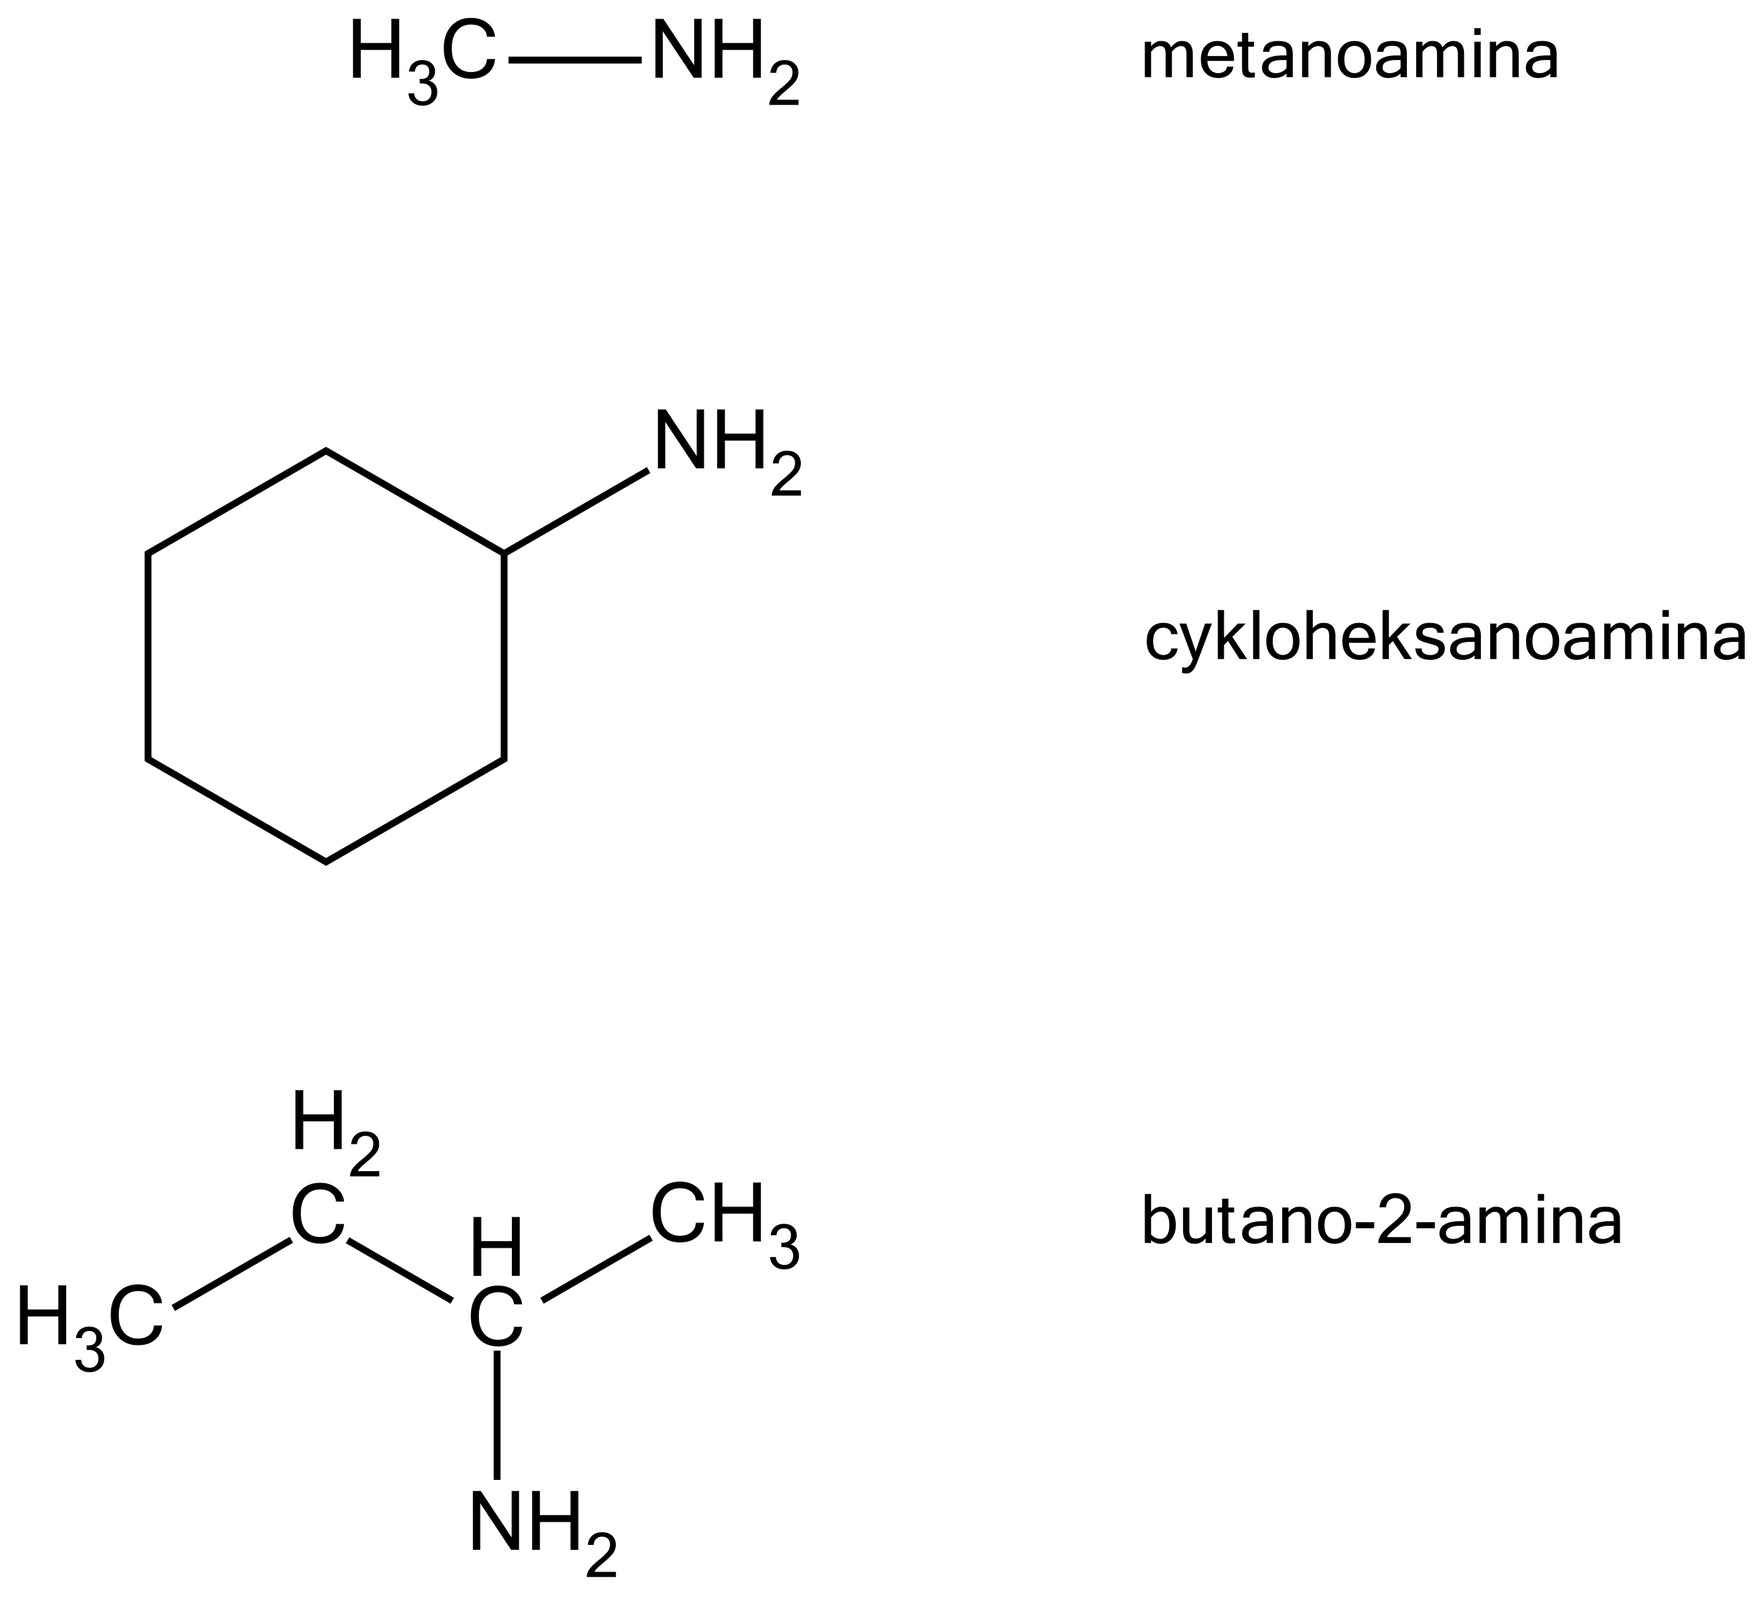 Na ilustracji są trzy wzory. 1. grupa metylowa łączy się z grupą                N       H                 2         . To metanoamina., 2. sześcioczłonowy pierścień łączy się u góry po prawej stronie z grupą                N       H                 2         . To cykloheksanoamina., 3. Łańcuch główny tworzy zygzak. Od lewej strony tworzą go następujące grupy: metylowa, metylenowa, grupa CH, grupa metylenowa. Grupa CH w dół łączy się z grupą                N       H                 2         . To butano‑2-amina.      